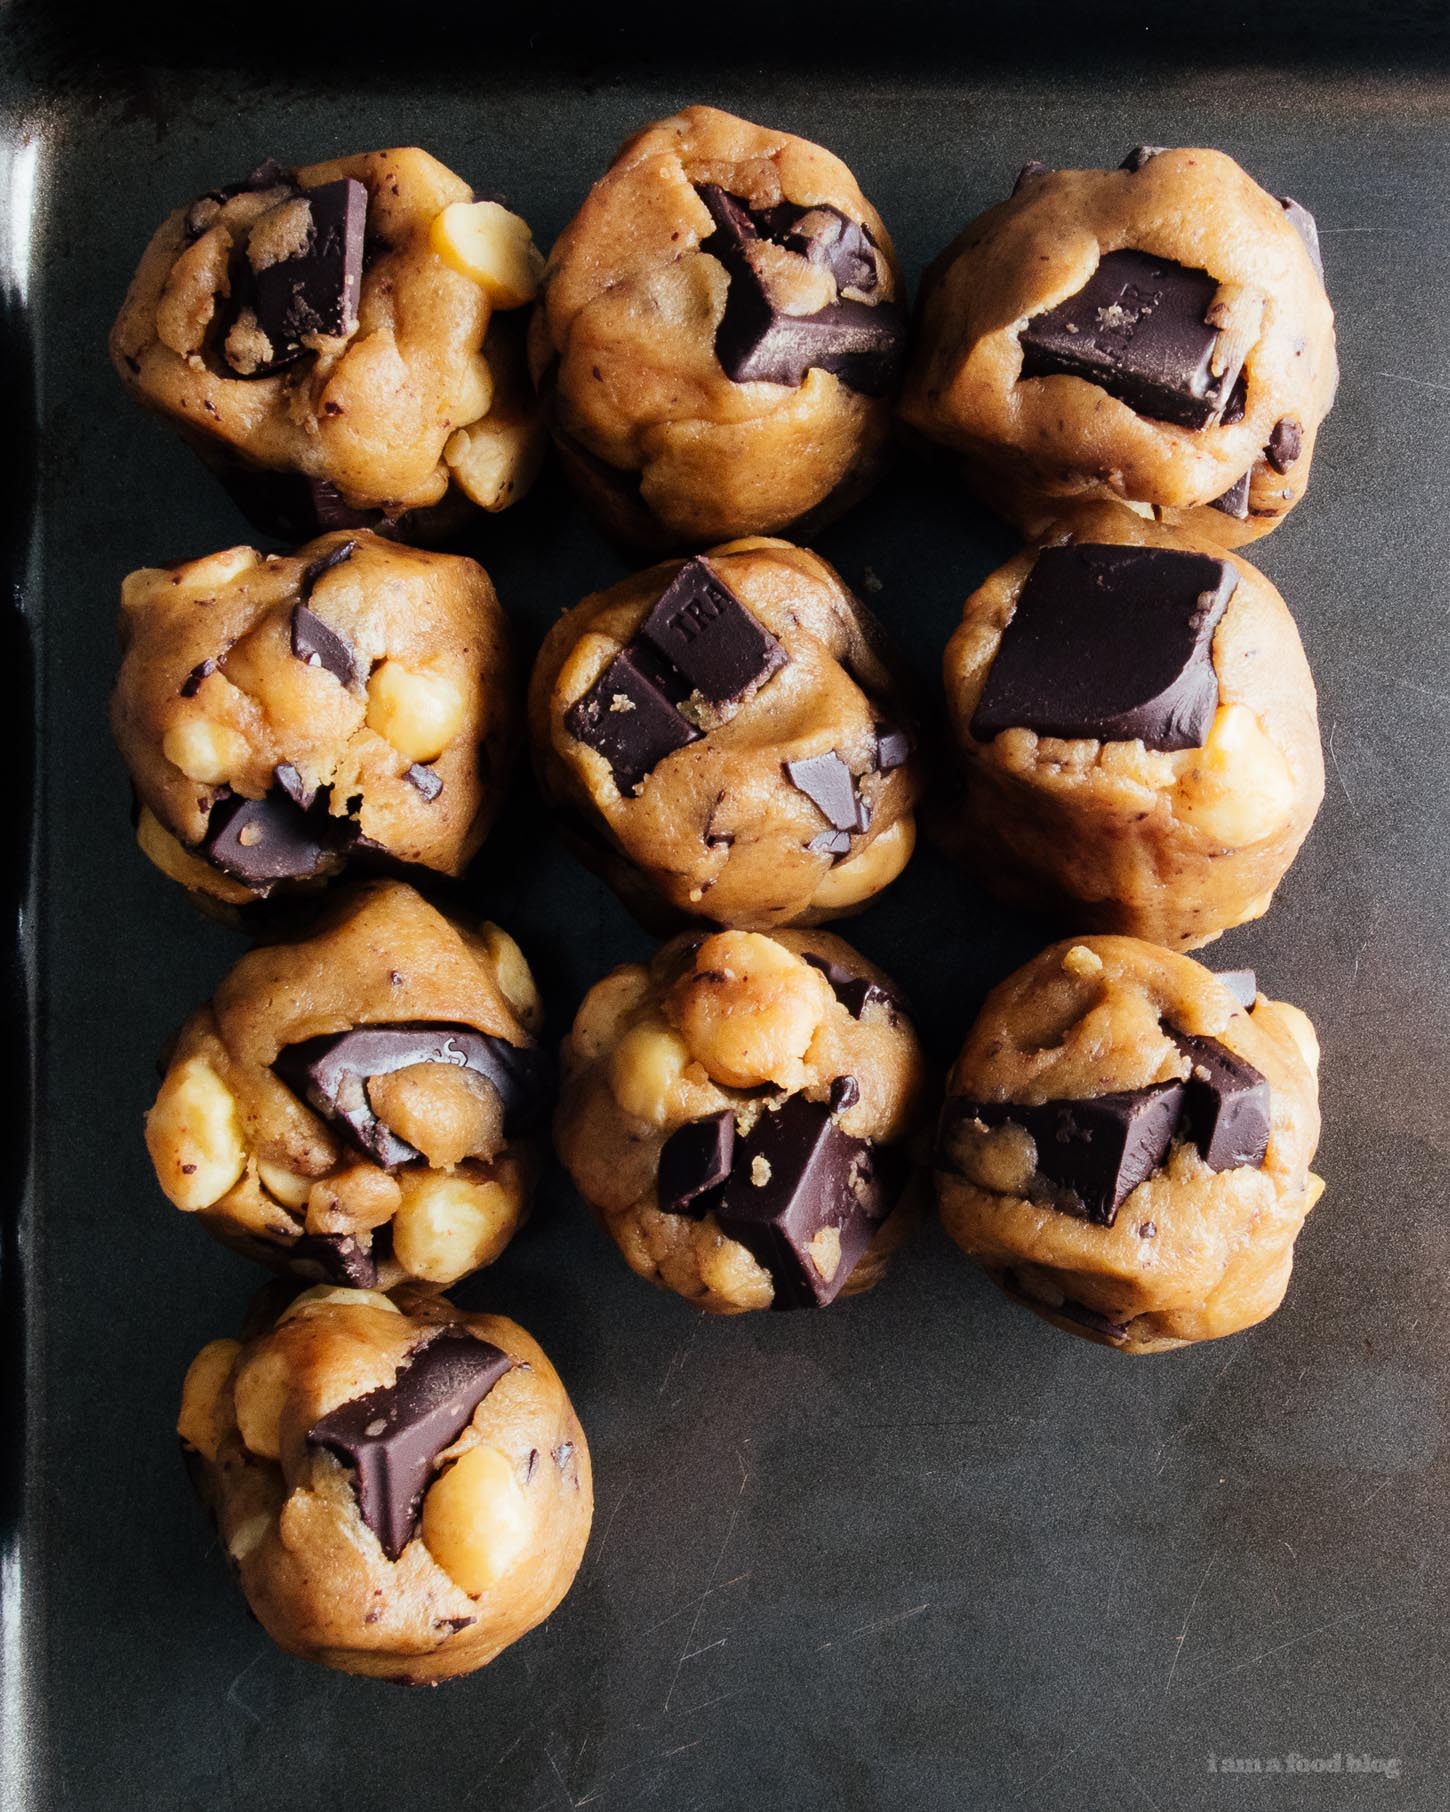 Receta de galletas de chispas de chocolate oscuro, nuez de macadamia, mantequilla marrón suave y masticable |  www.iamafoodblog.com